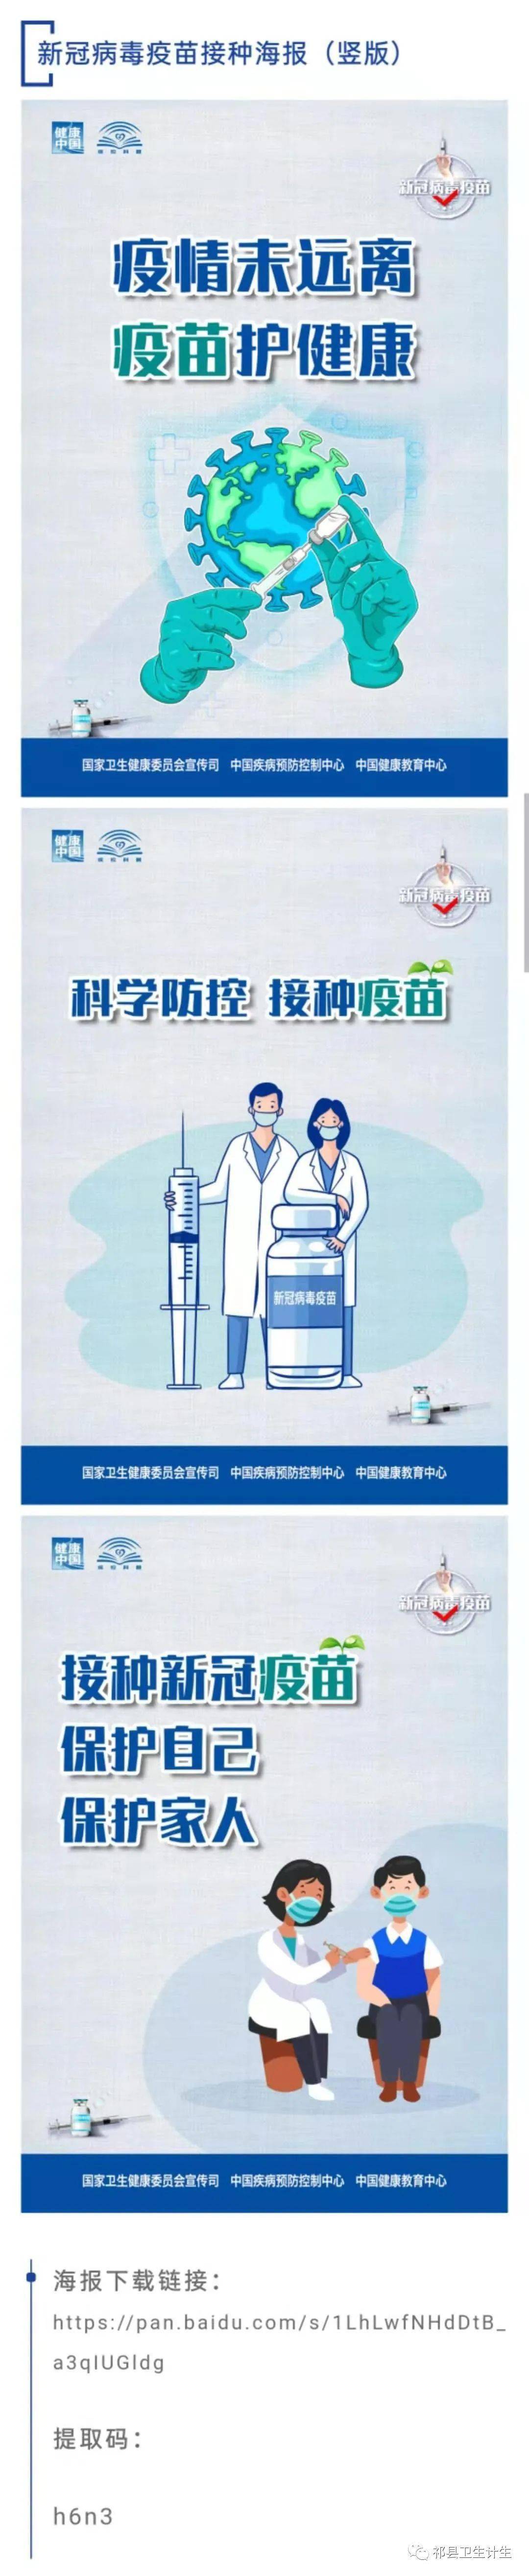 新冠病毒疫苗接种海报来了!